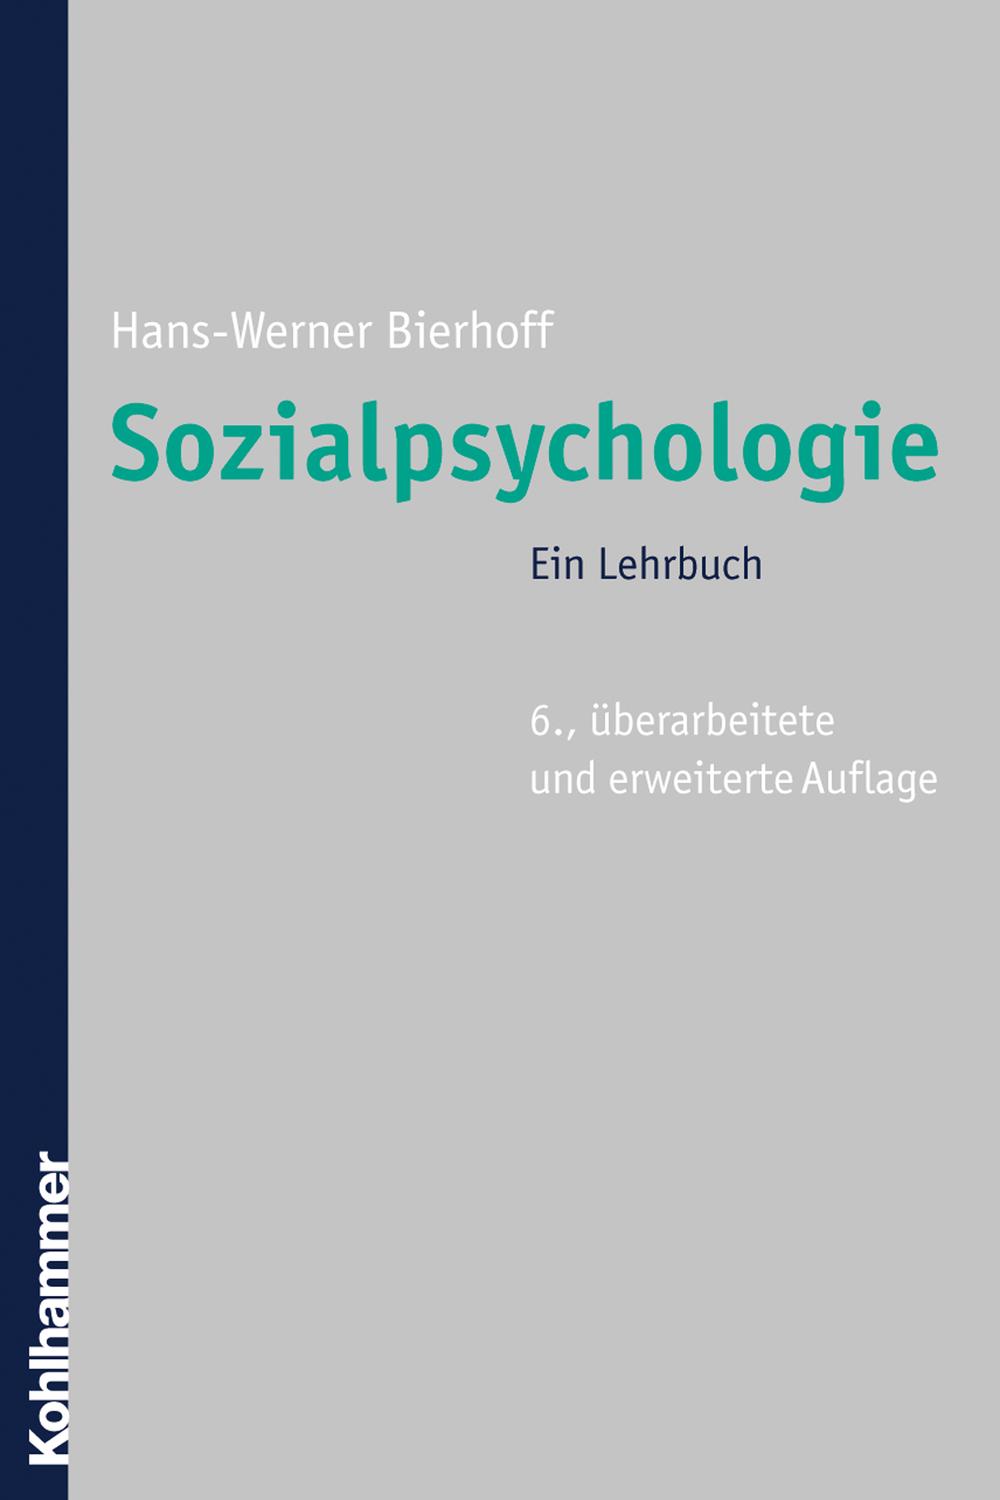 Sozialpsychologie - Hans-Werner Bierhoff,,